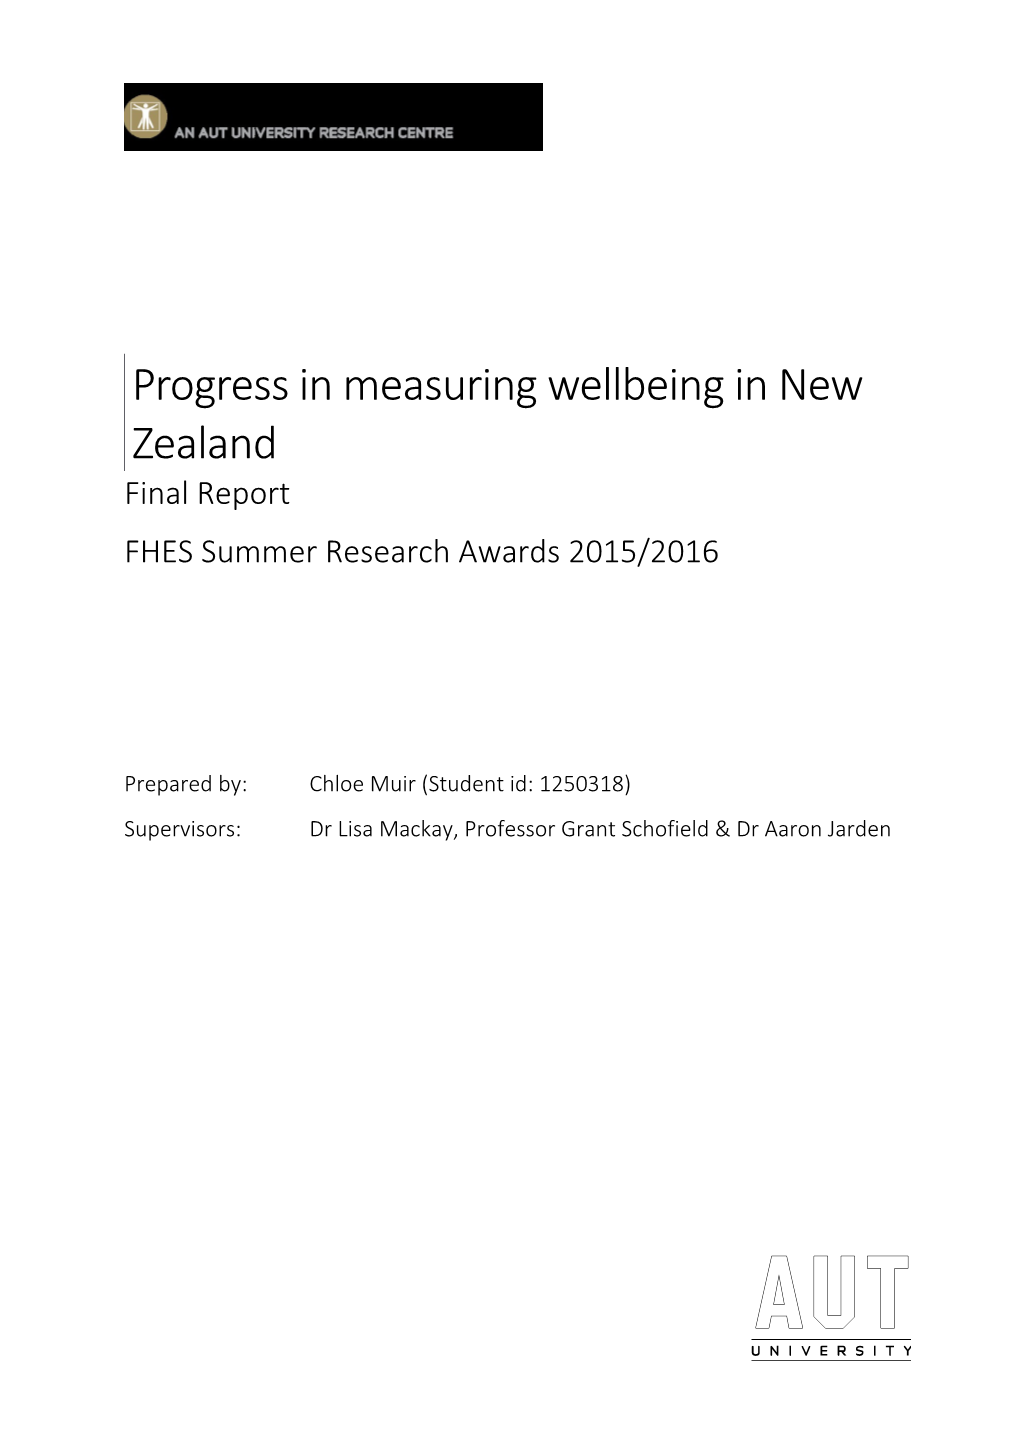 Progress in Measuring Wellbeing in New Zealand